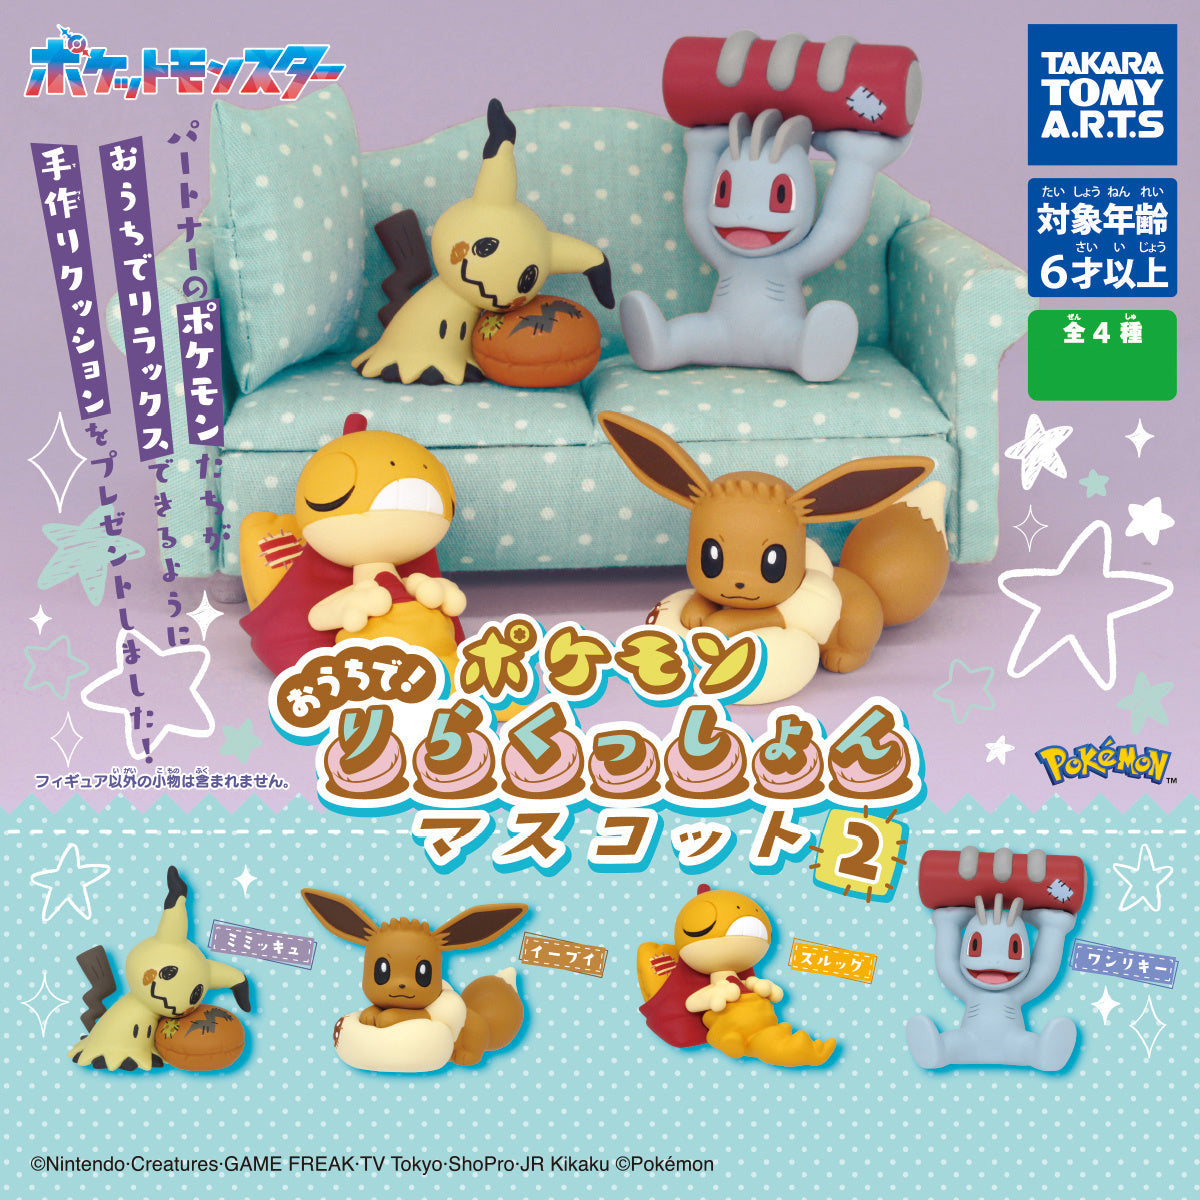 Pokemon at Home! Relaxation Mascot Part 2 Mini Figure Gashapon Toy Tomy Takara (Mimikyu)